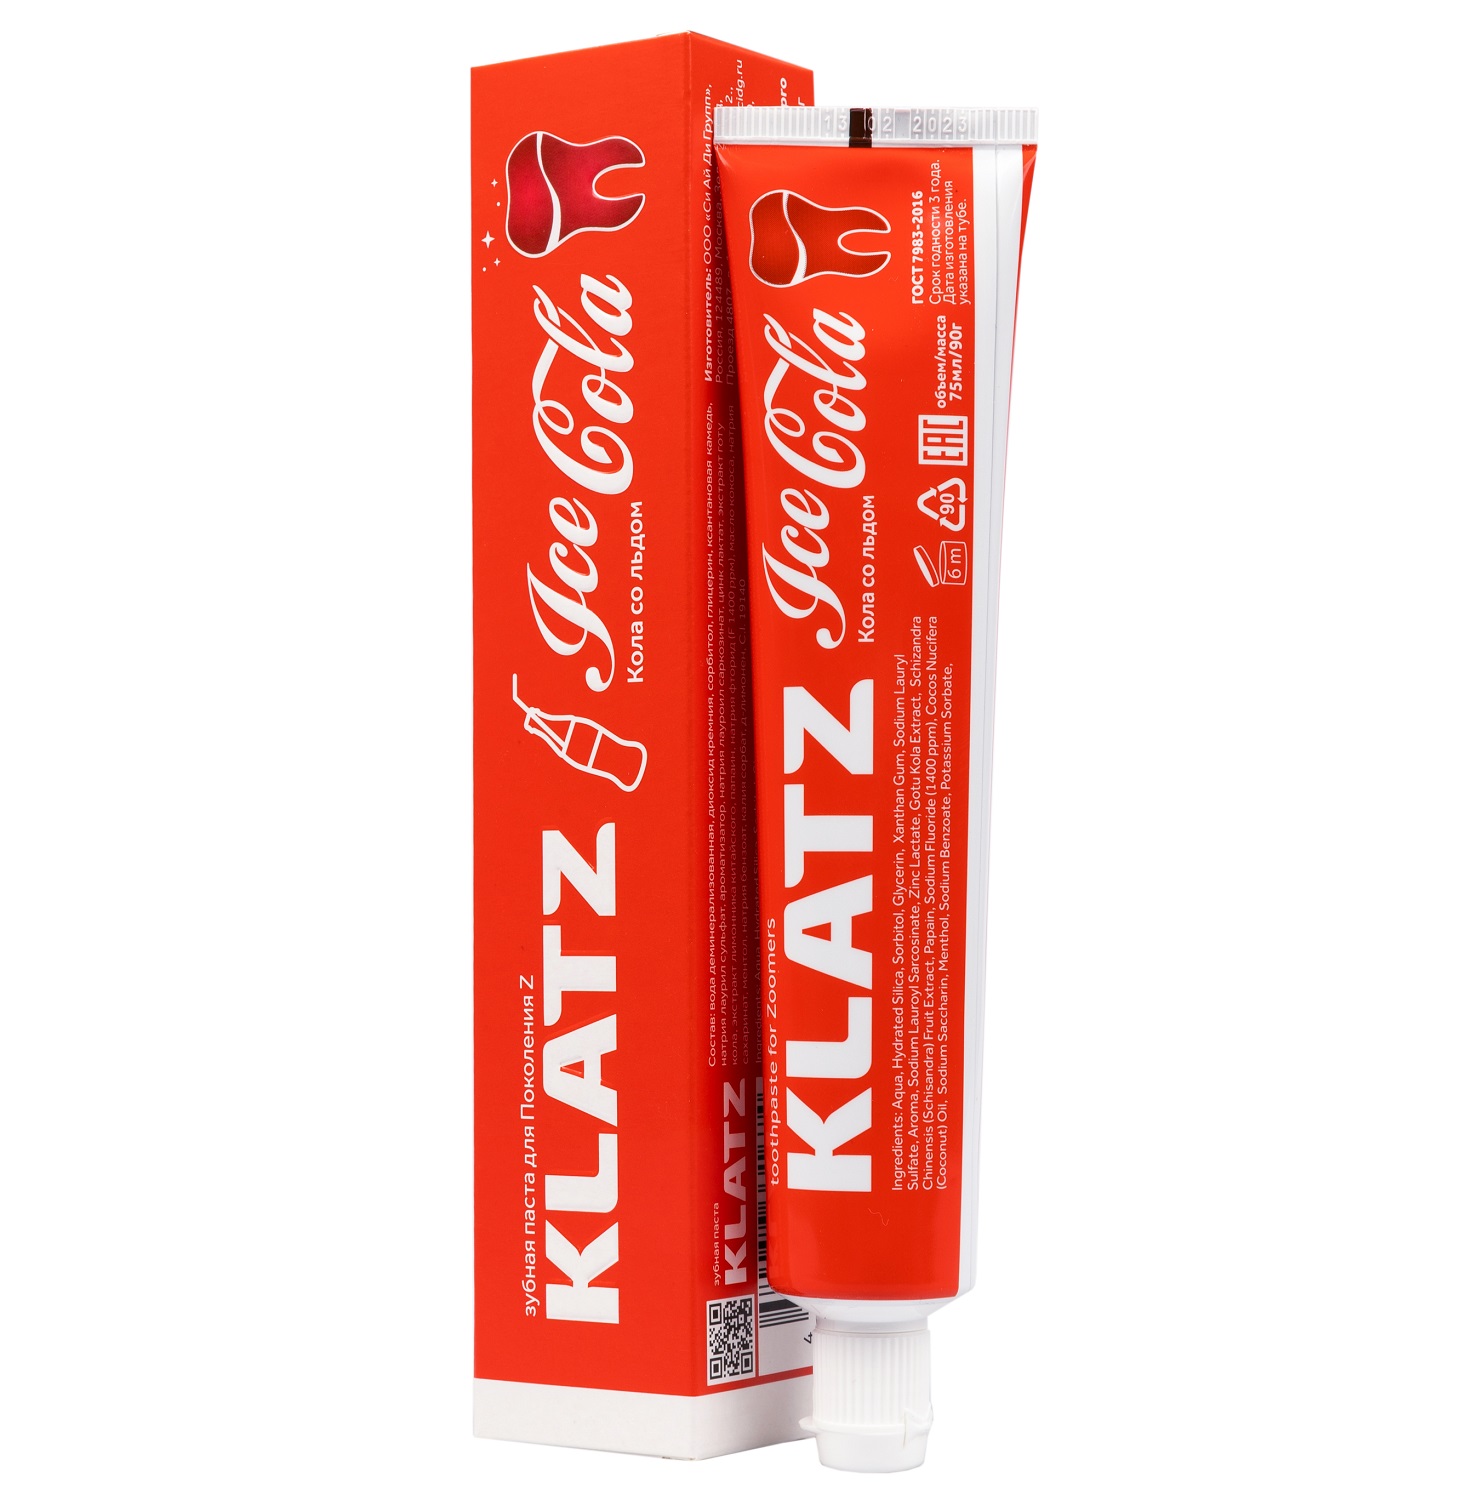 Klatz Зубная паста для поколения Z «Кола со льдом», 75 мл (Klatz, Zoomers)